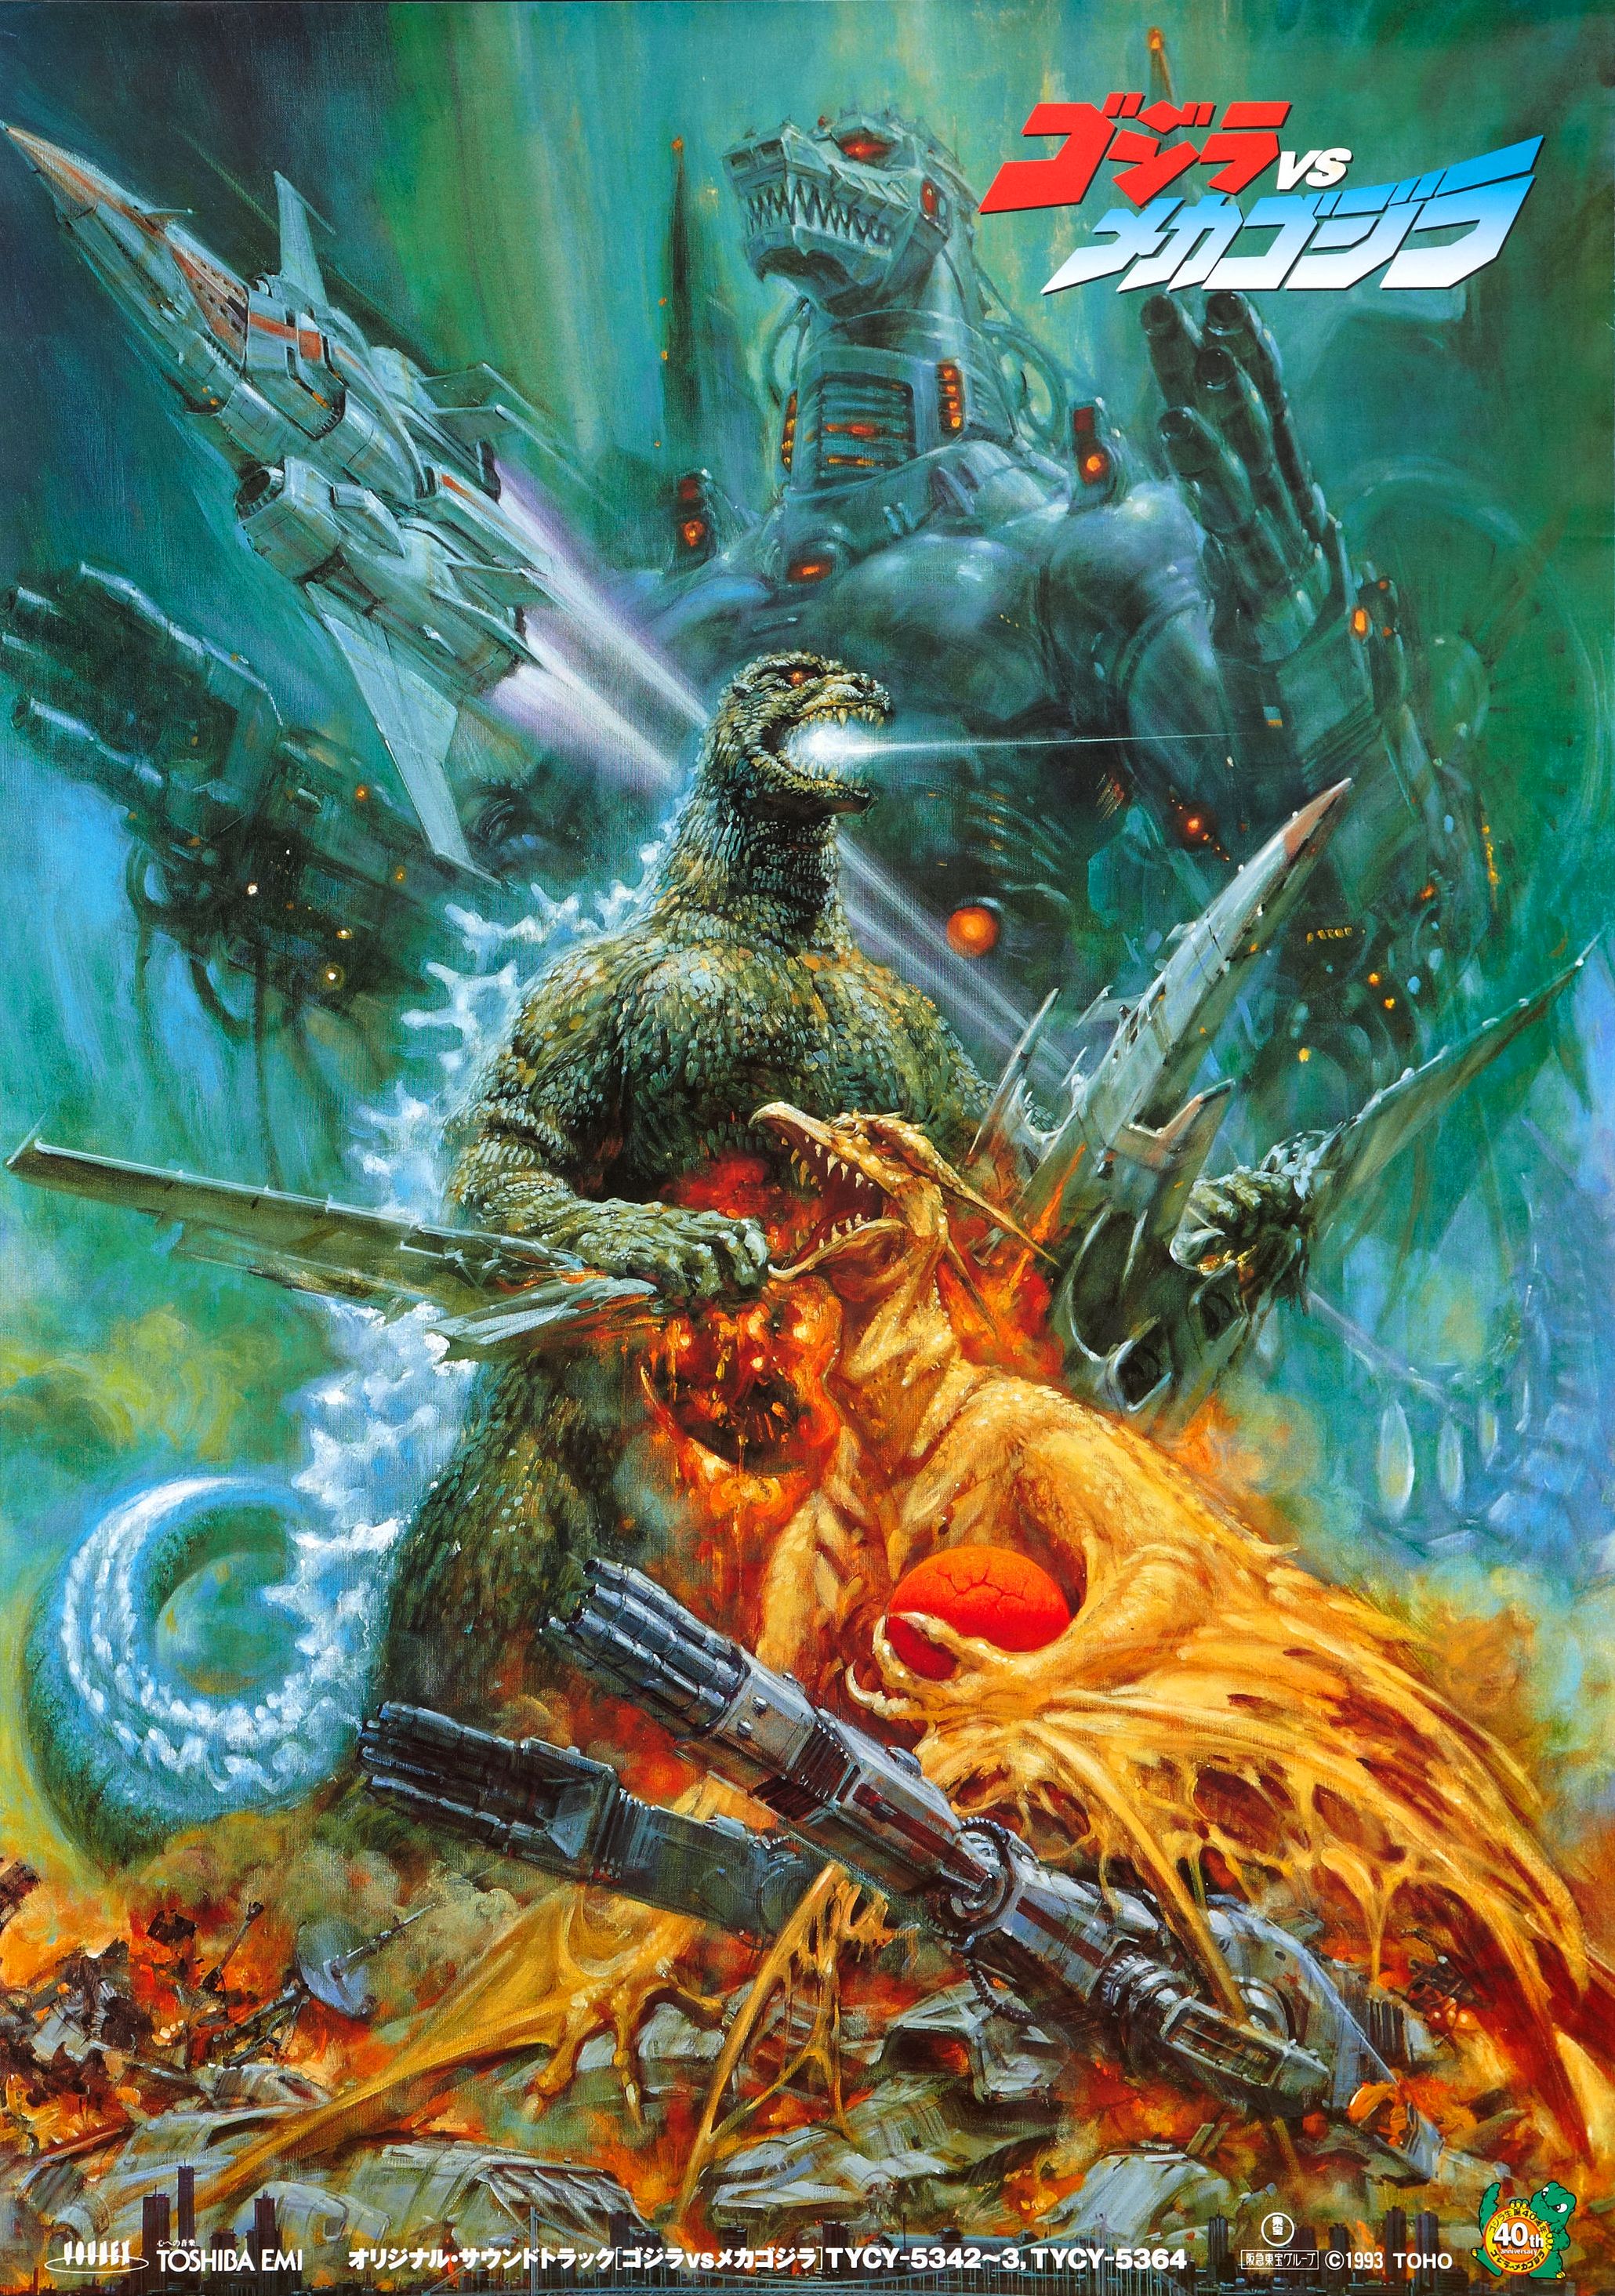 Godzilla Vs. Mechagodzilla Backgrounds on Wallpapers Vista